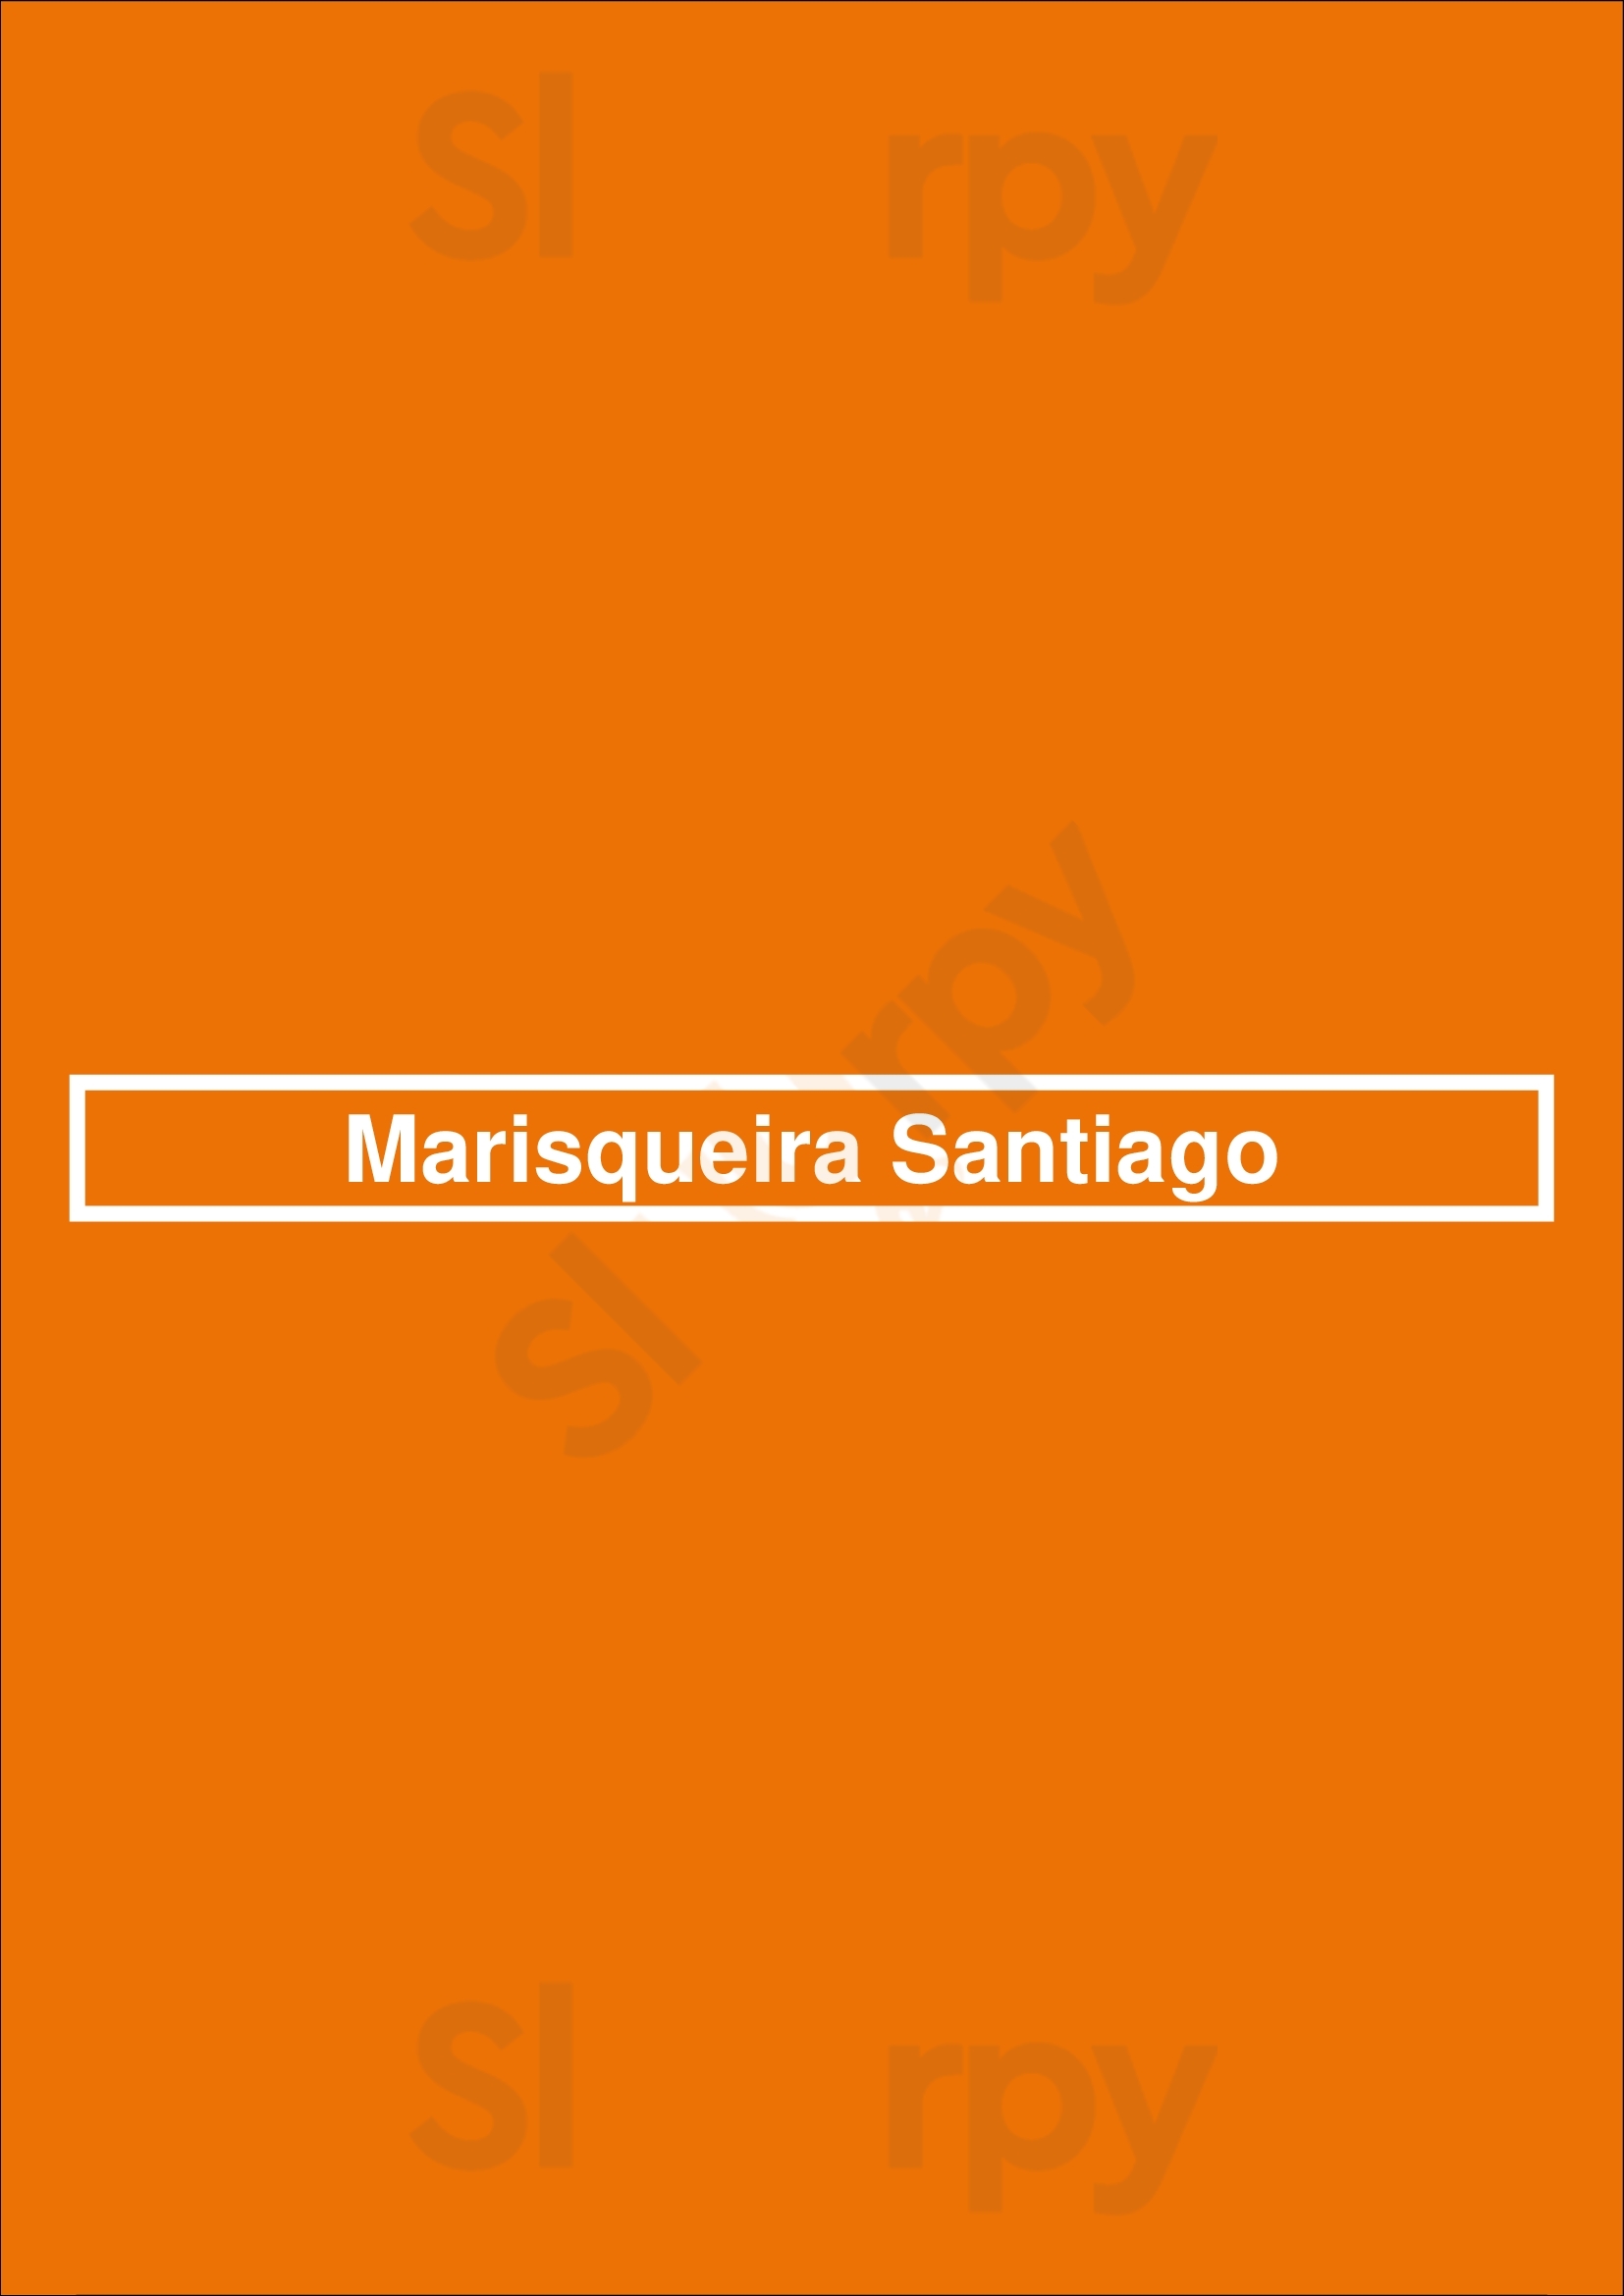 Marisqueira Santiago Quarteira Menu - 1